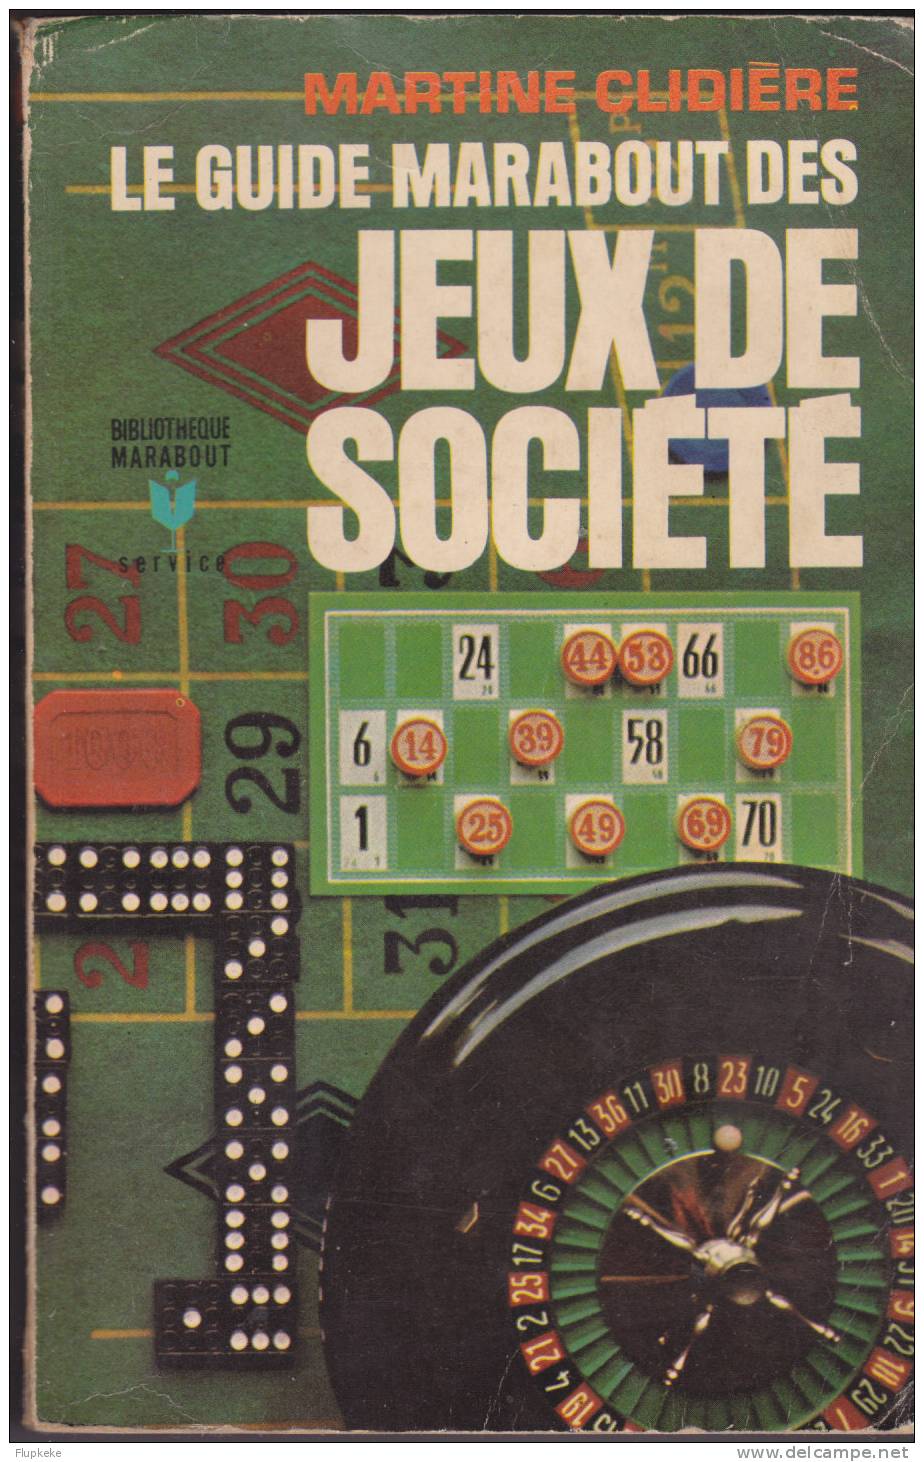 Bibliothèque Marabout MS 80 Le Guide Marabout Des Jeux De Société Martine Clidière 1968 - Autores Belgas